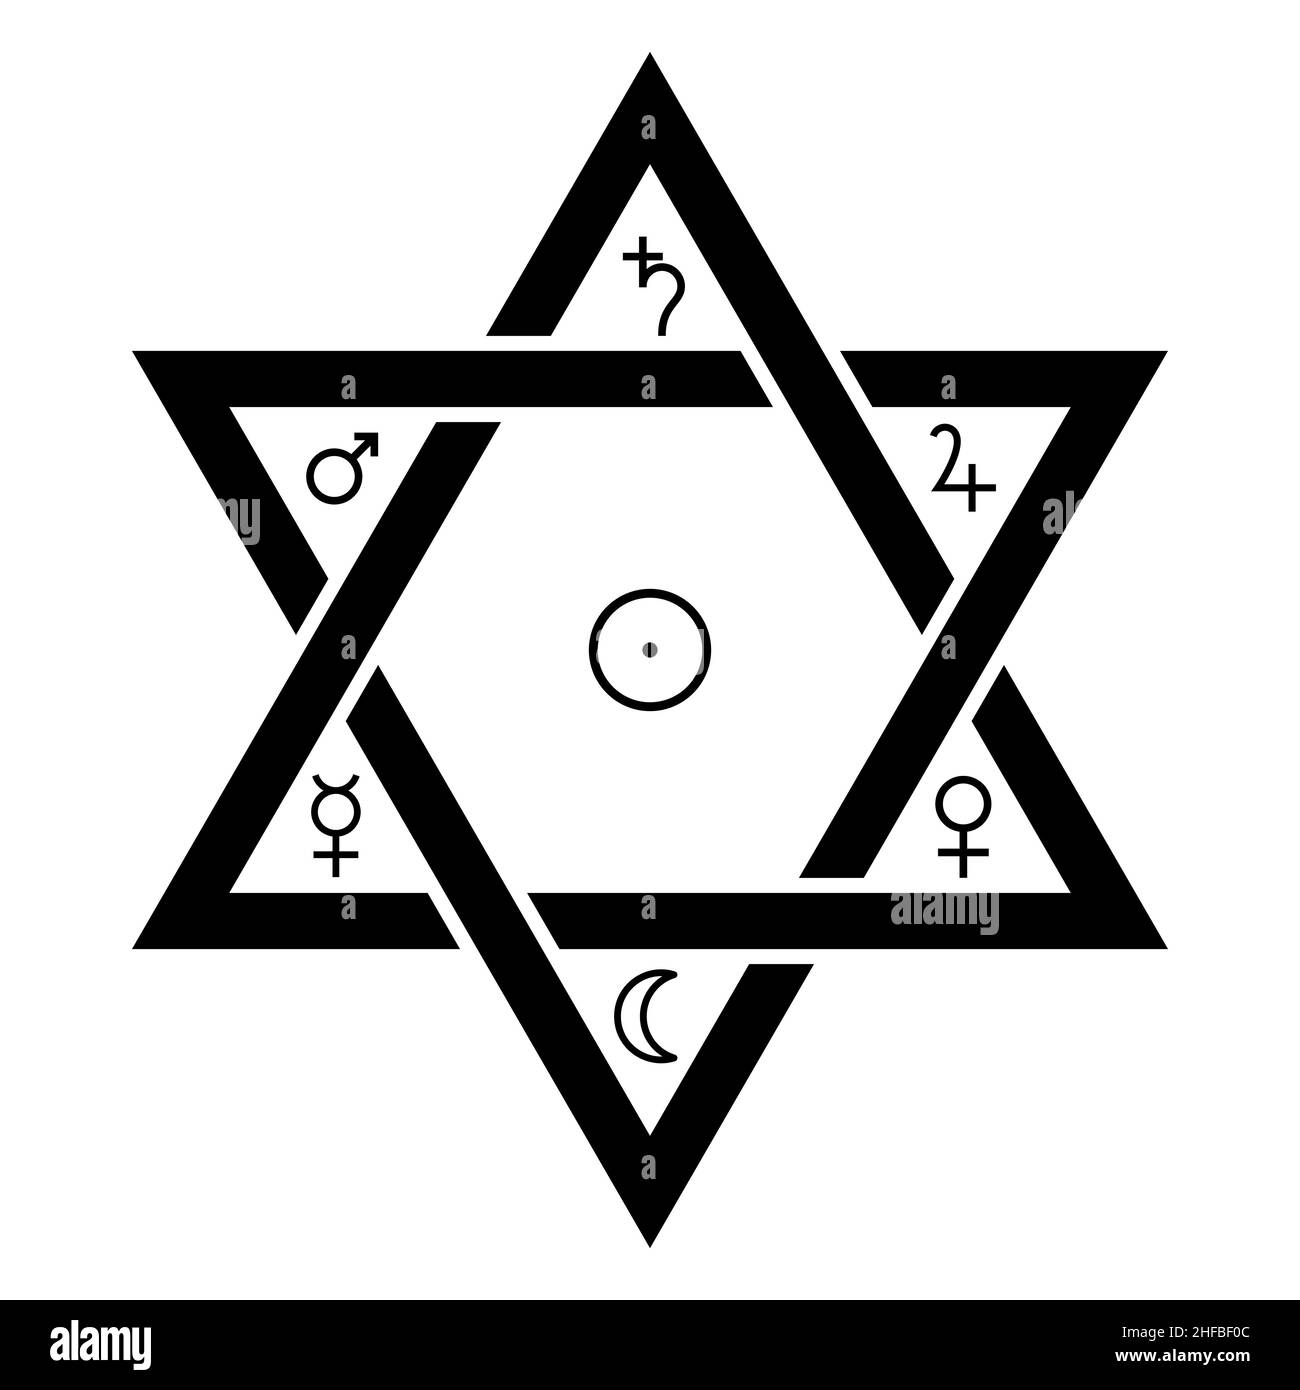 Los símbolos clásicos del planeta astrológico en el Sello de Salomón.  Símbolo en forma de hexagrama, atribuido al Rey Salomón Fotografía de stock  - Alamy